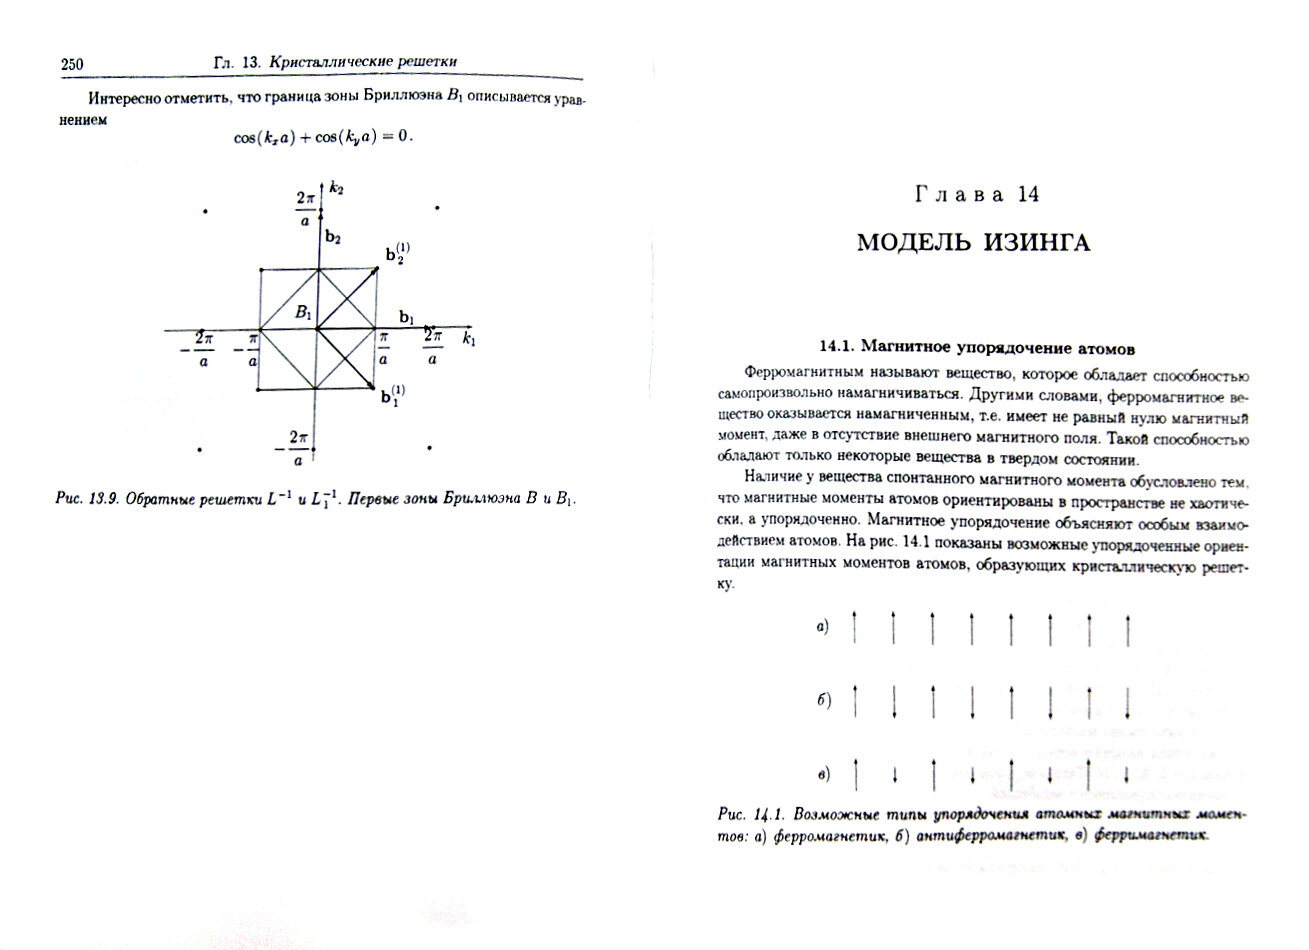 Метод матриц плотности в квантовой теории кооперативных явлений - фото №3